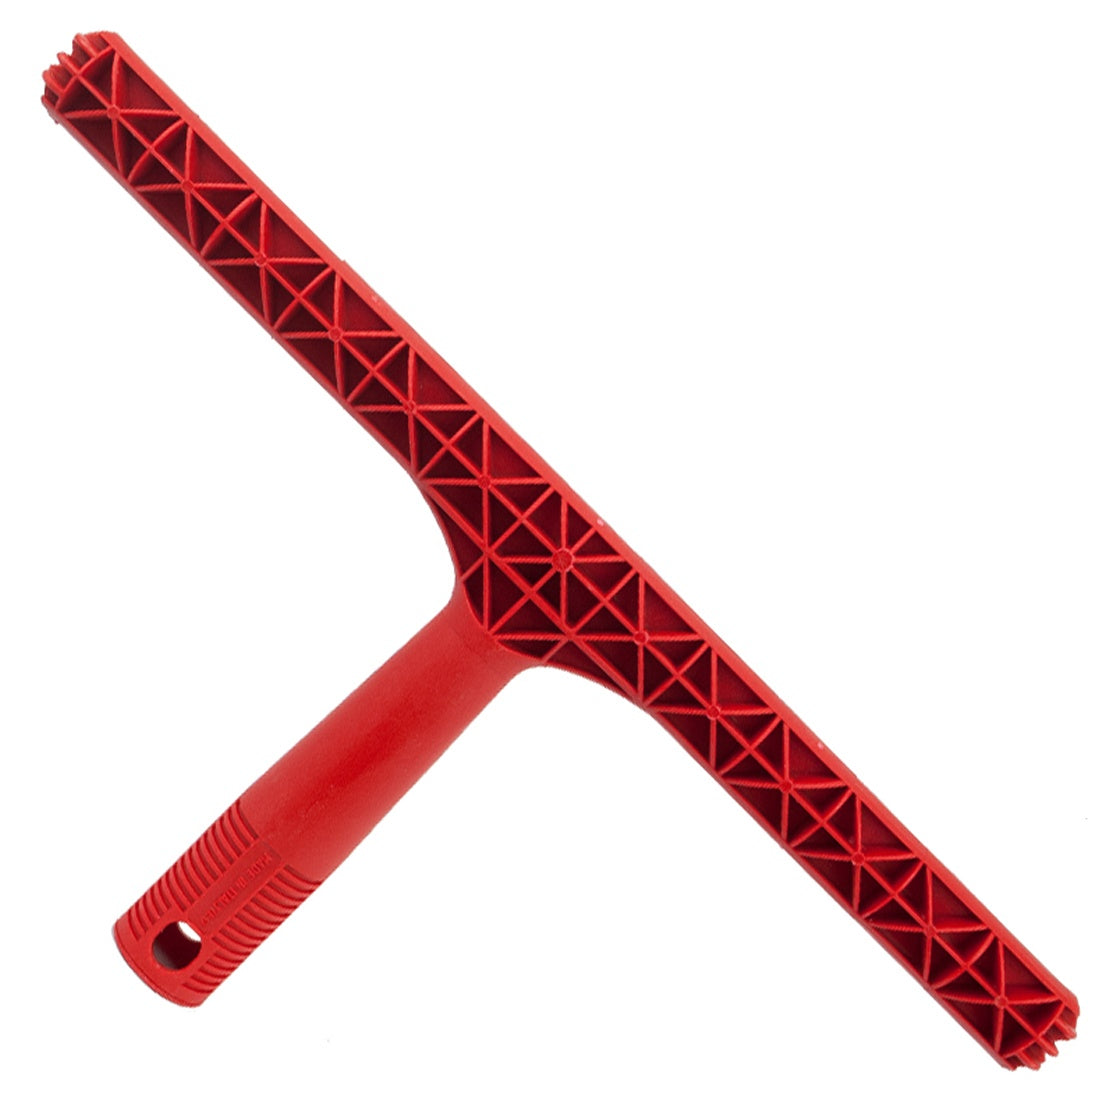 Pulex Plastic Red T-Bar main view